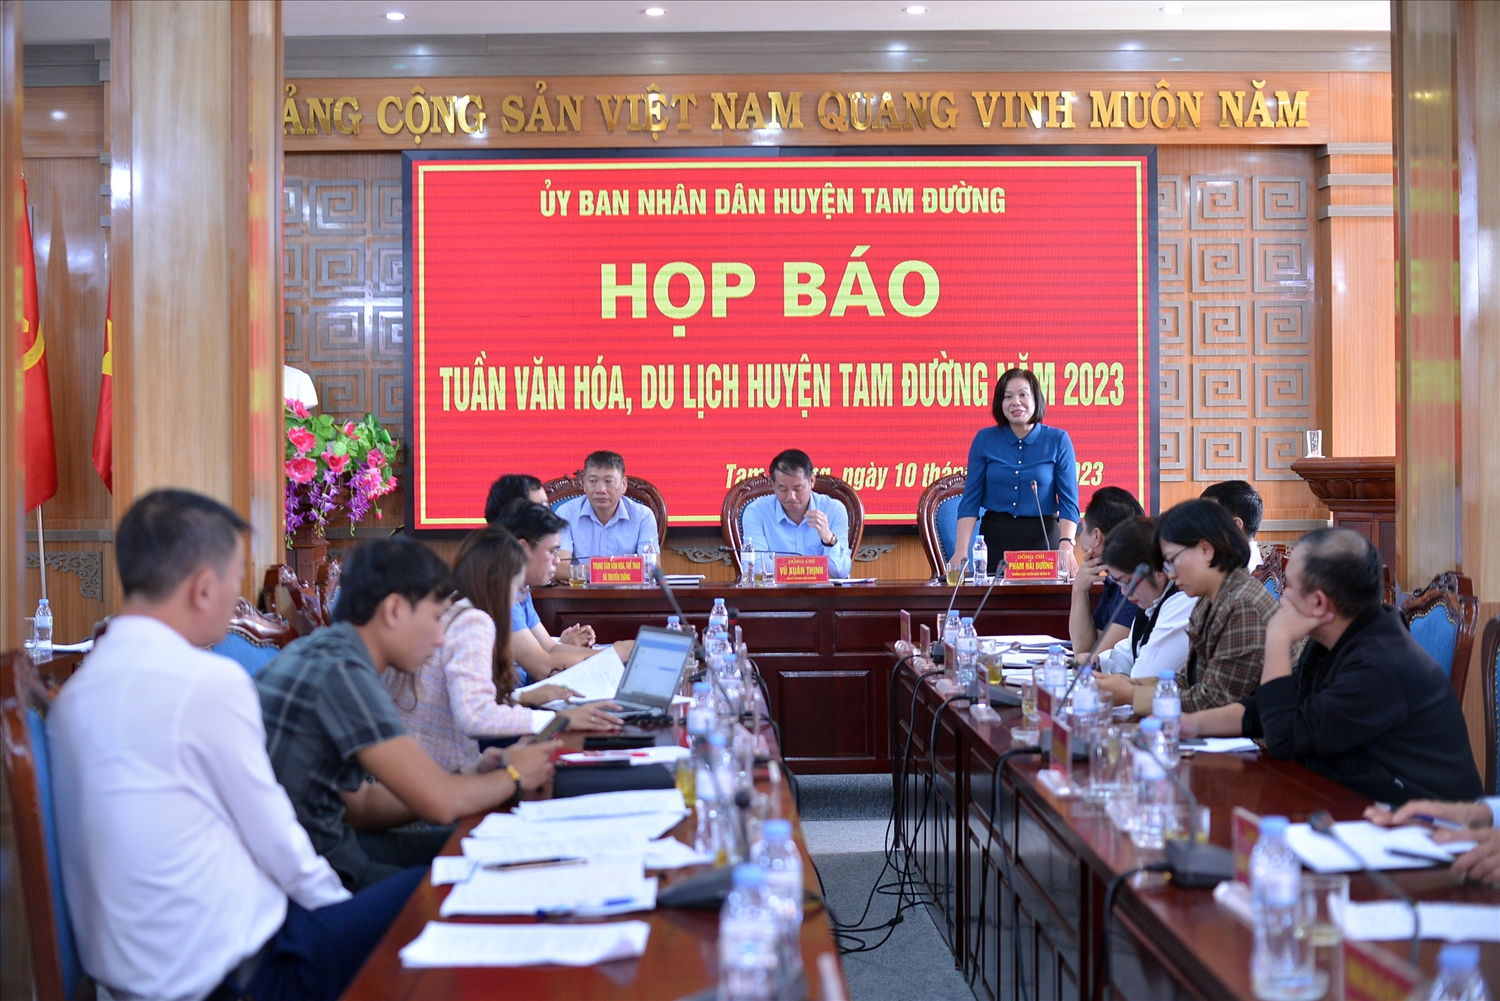 UBND huyện Tam Đường tổ chức Họp báo, cung cấp thông tin trước sự kiện Tuần văn hóa, Du lịch huyện Tam Đường năm 2023.